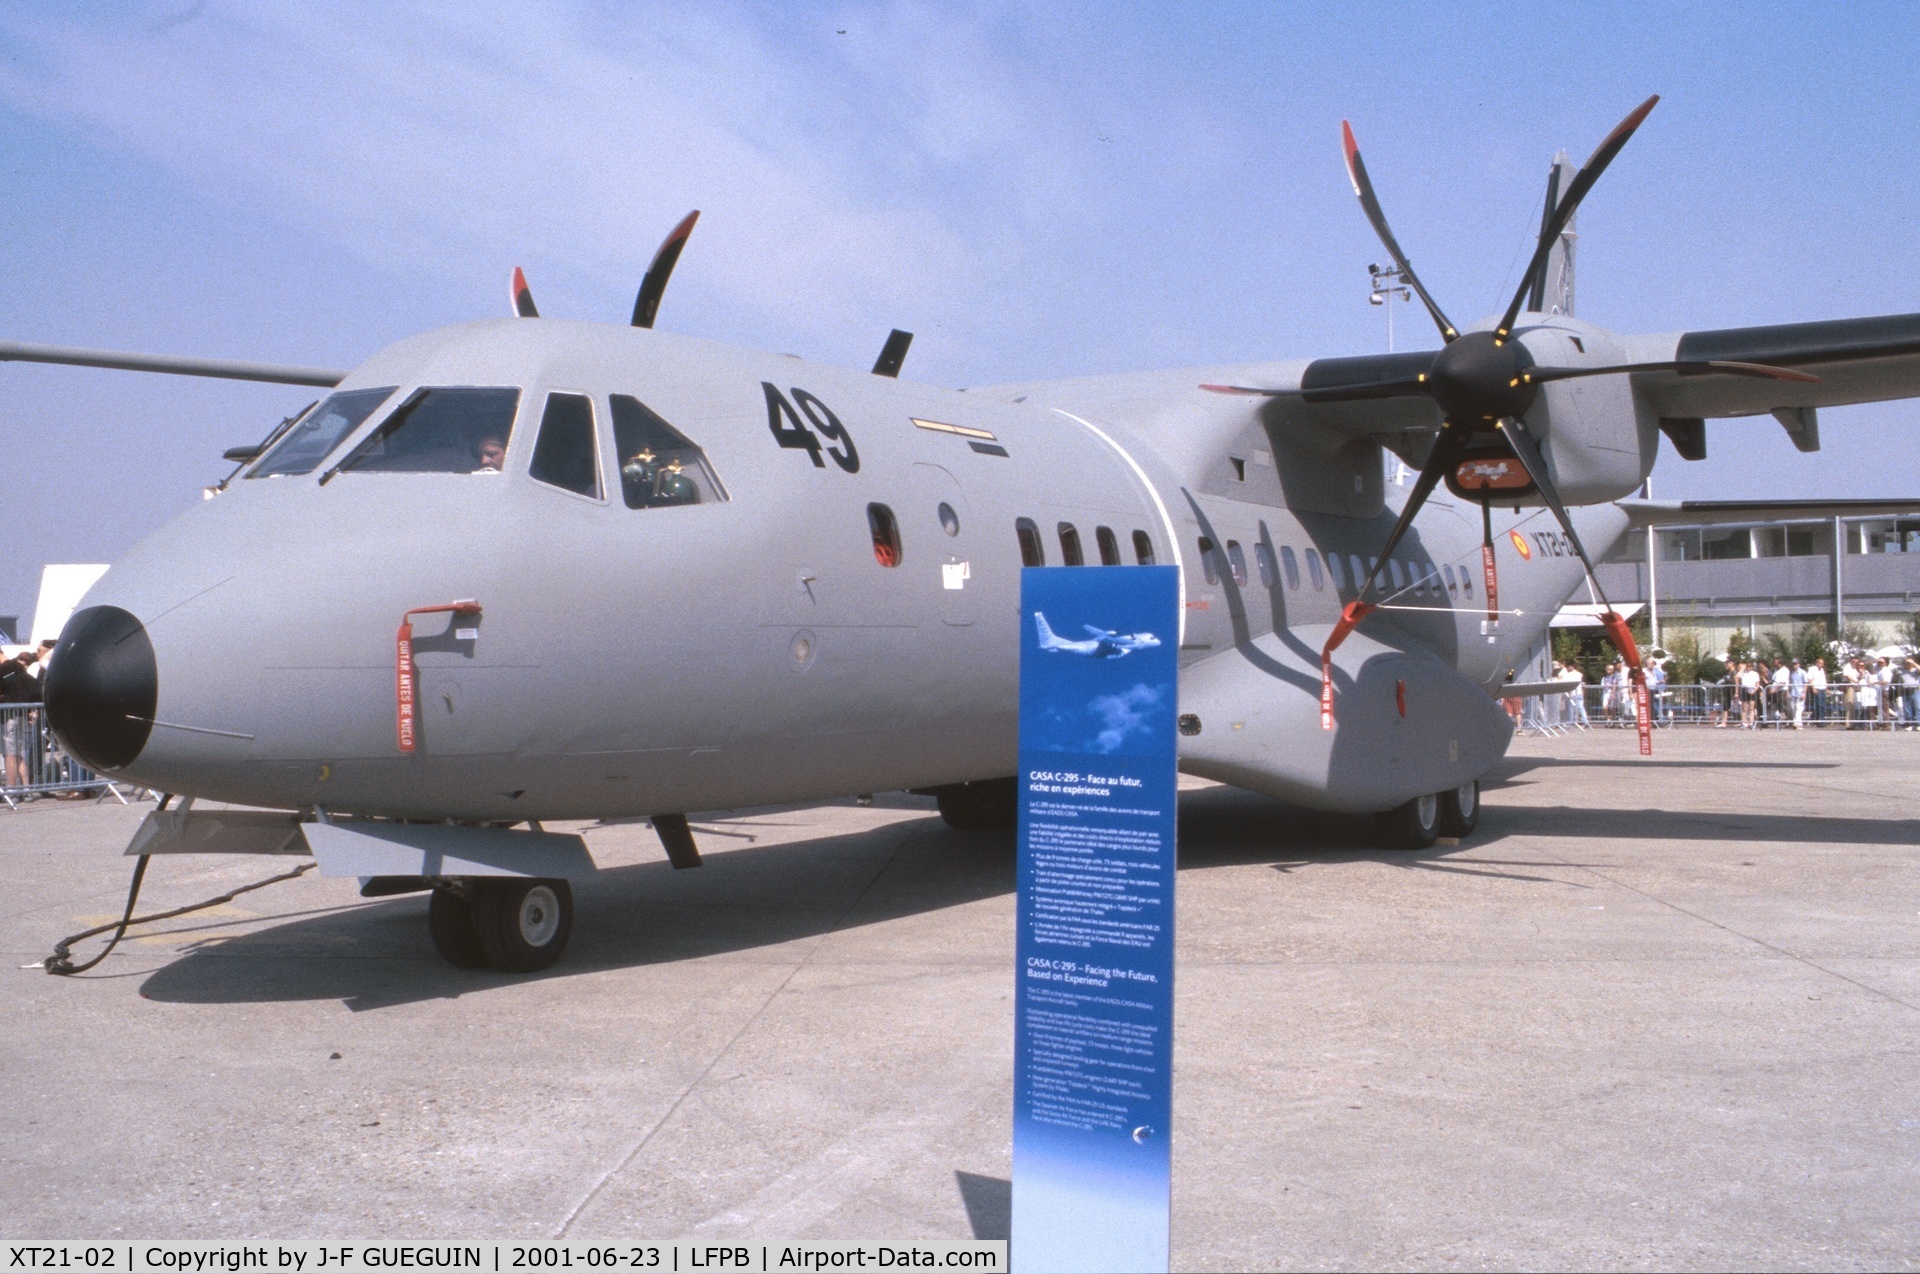 XT21-02, 2001 CASA C-295M C/N EA03-02-003, On display at 2001 Paris-Le Bourget airshow.